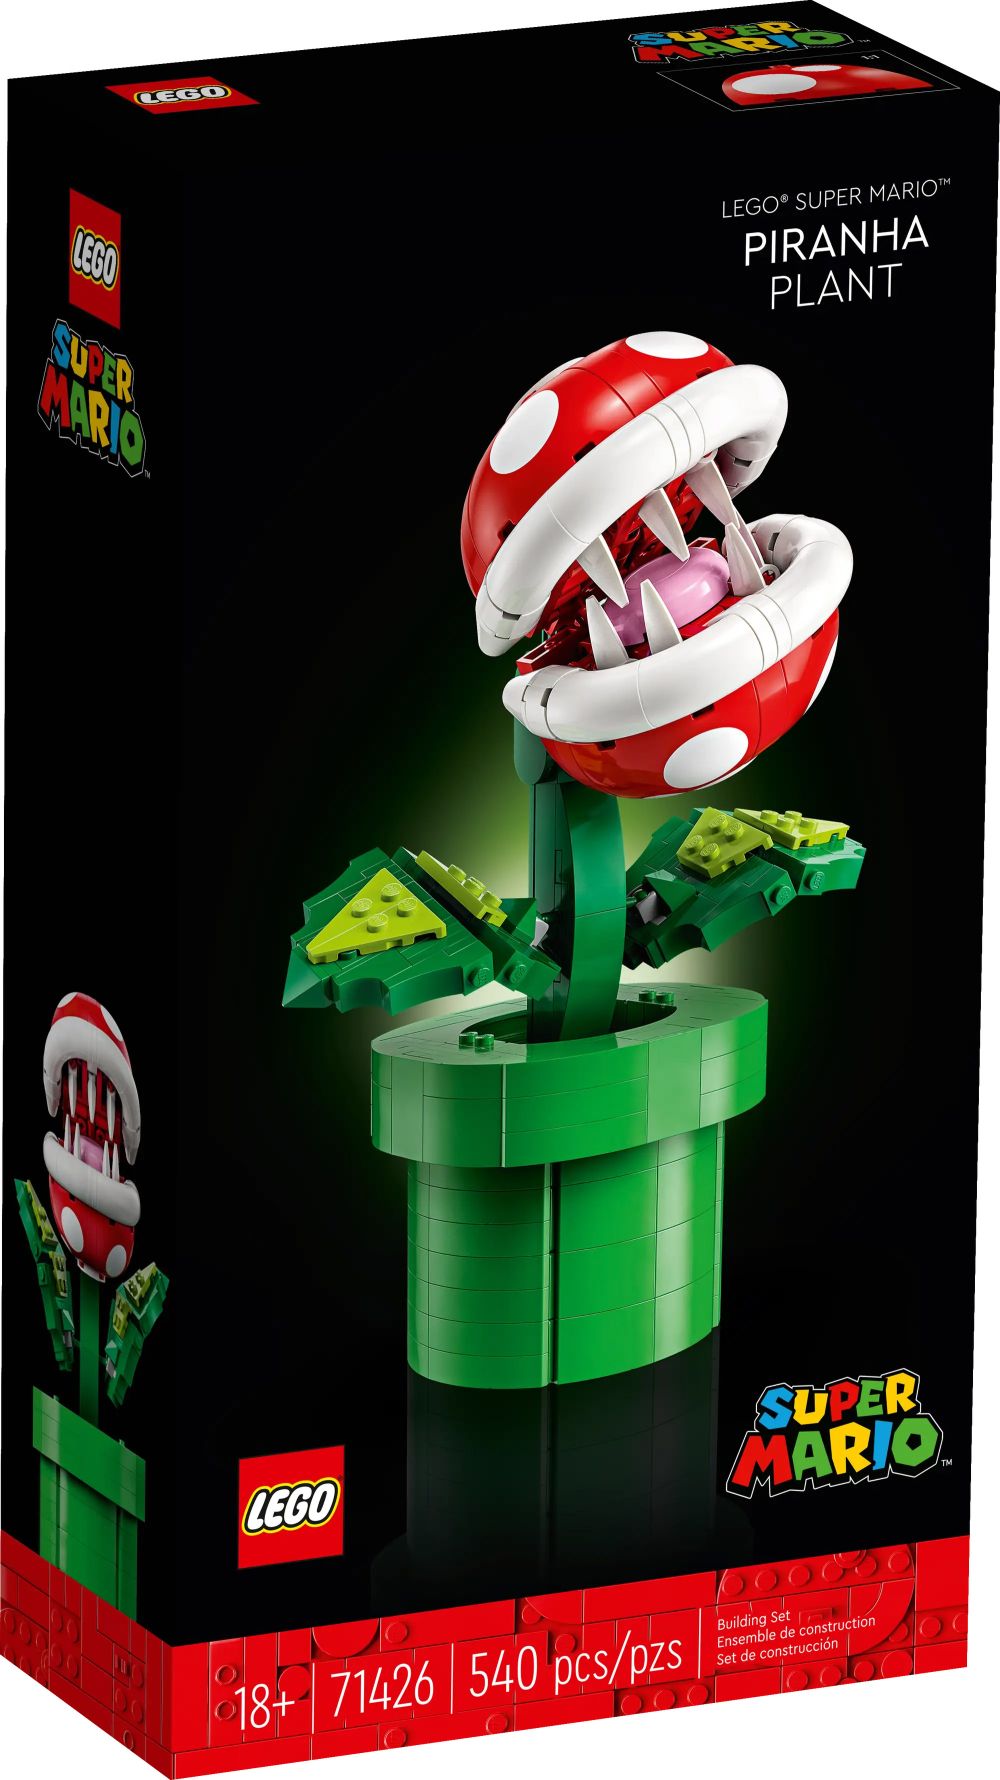 LEGO Super Mario 71426 pas cher, Plante Piranha